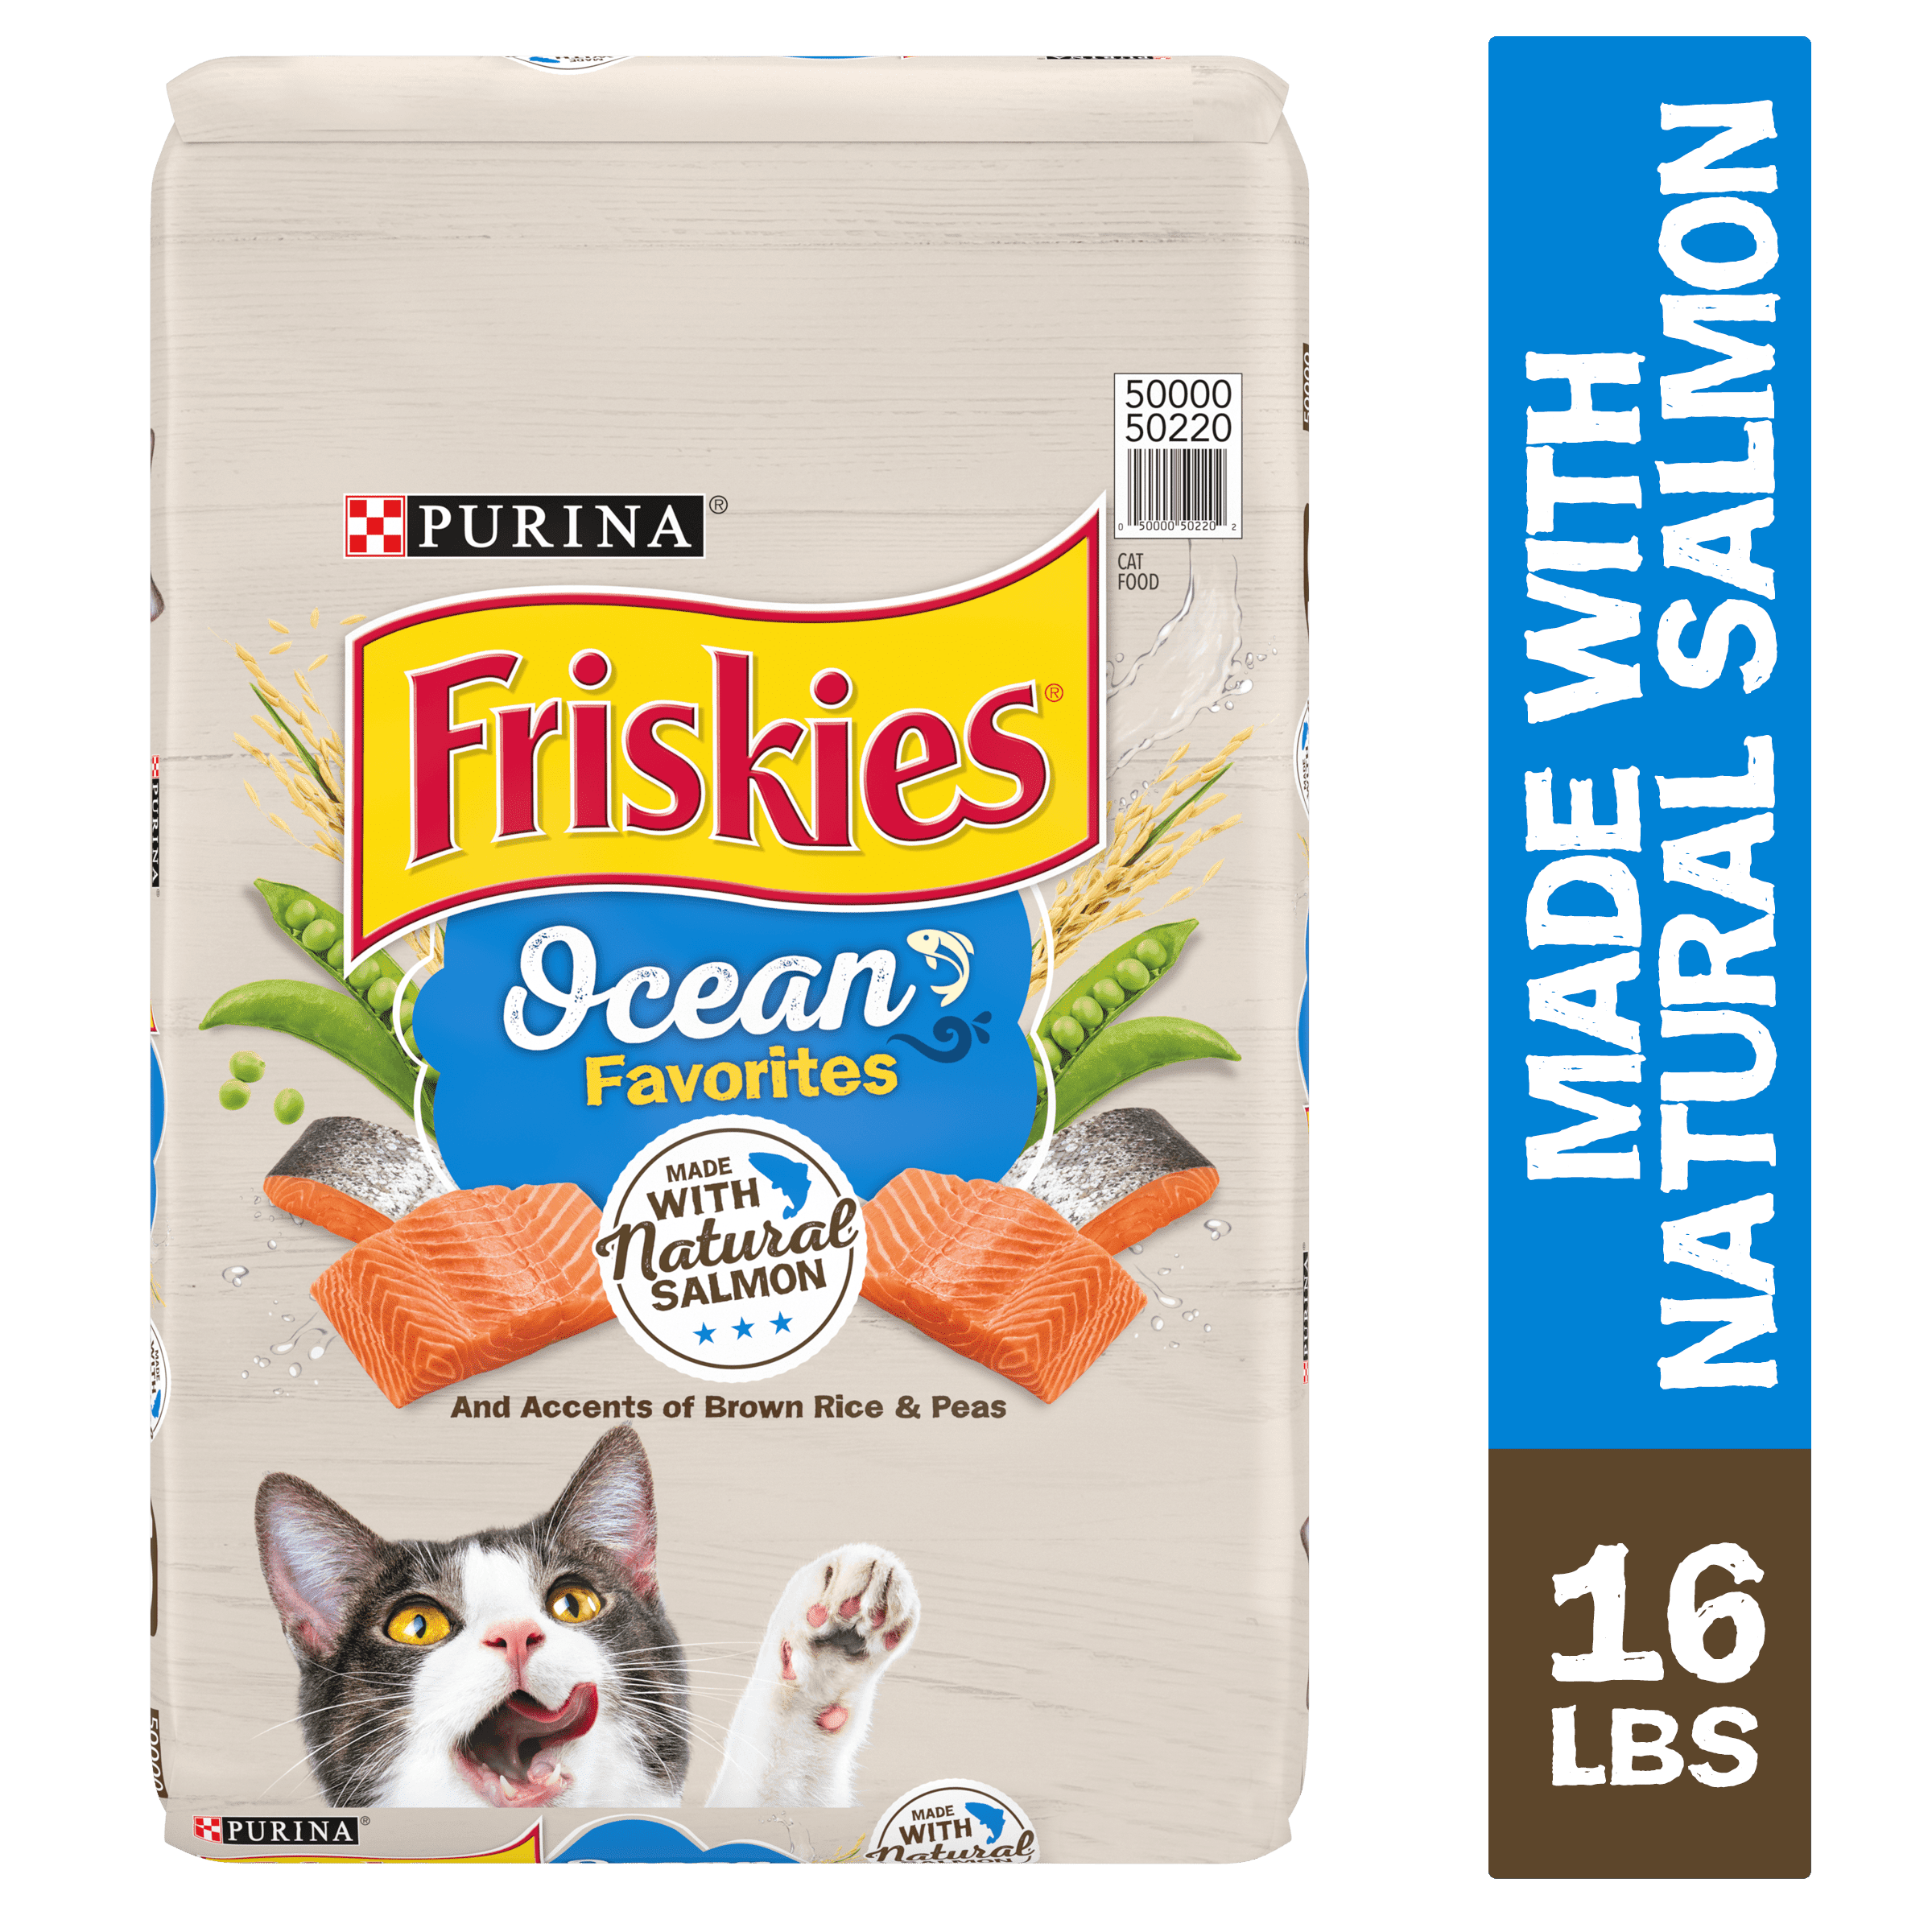 Friskies Dry Cat Food, Ocean Favorites With Natural Salmon, 16 lb. Bag